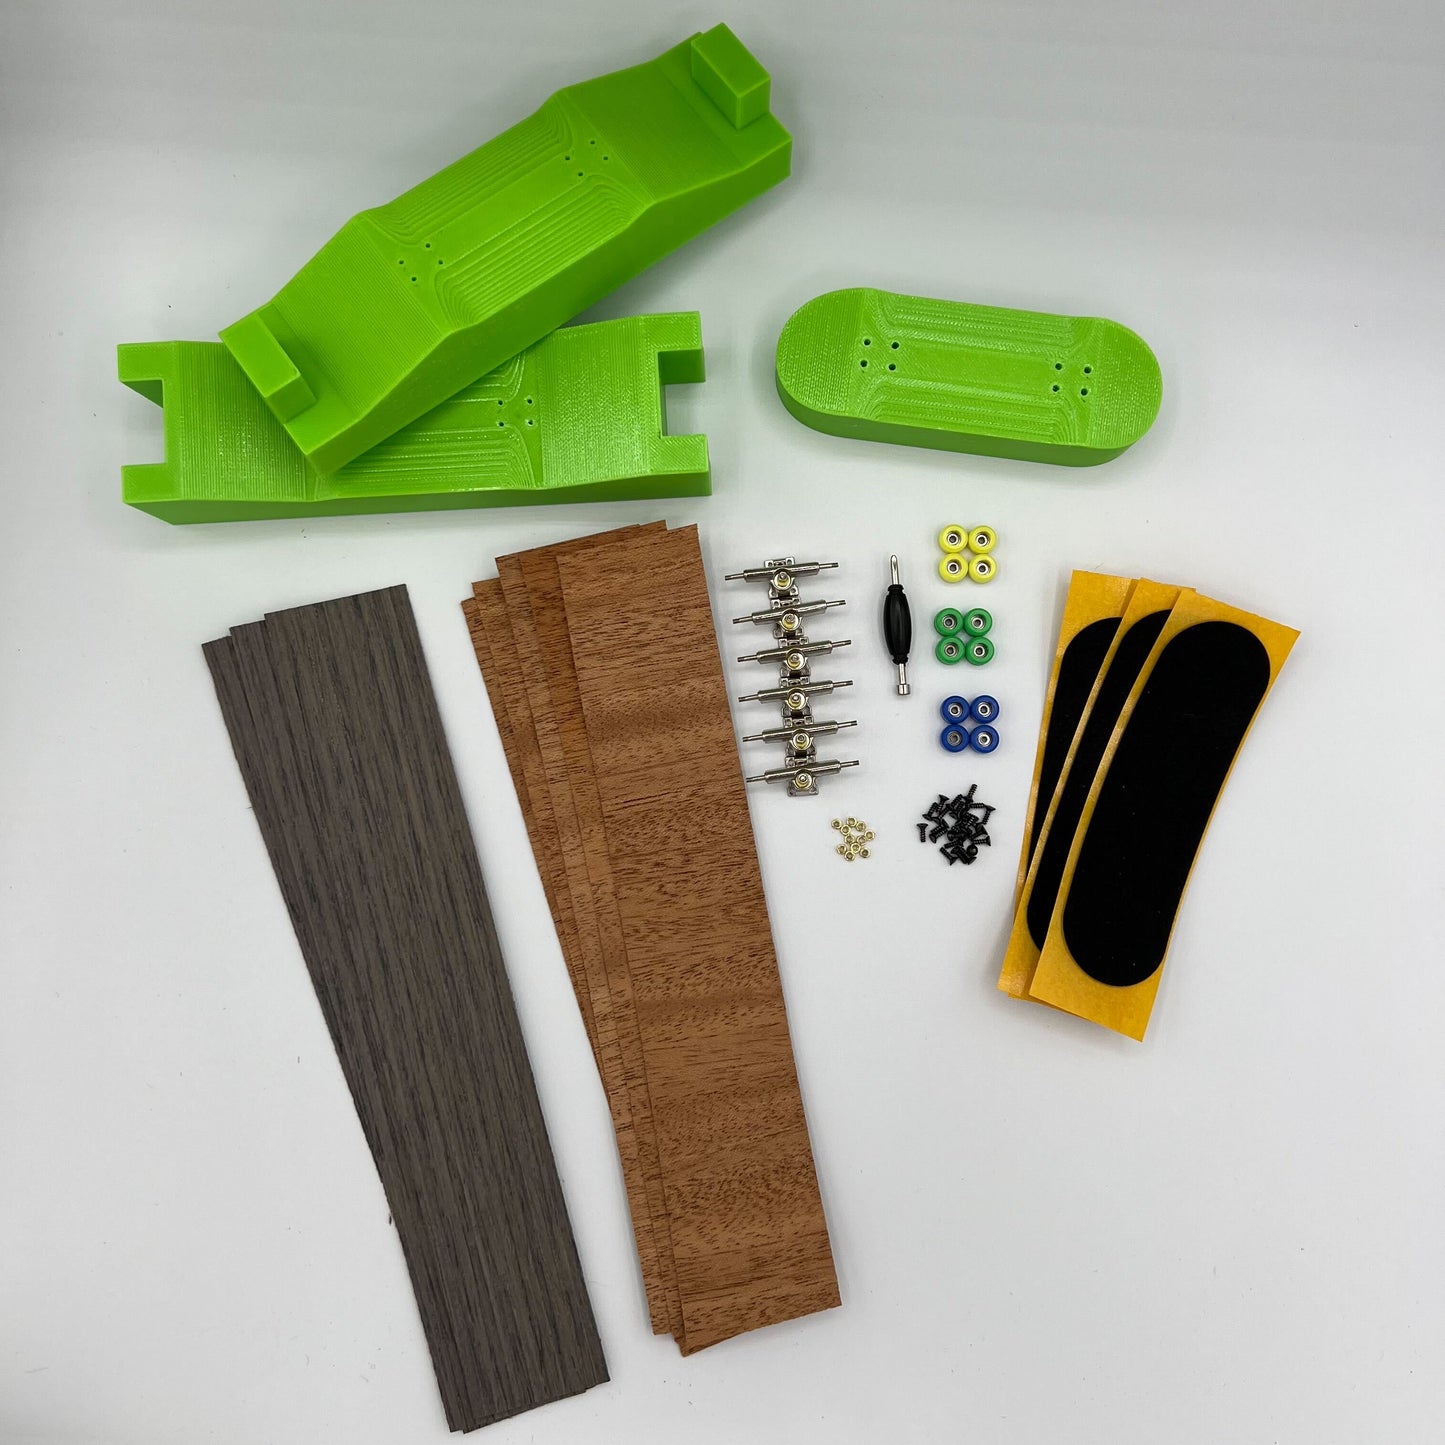 DIY Fingerboard Mold Kit - Makes 98mm x 32mm Fingerboards - Complete Kit